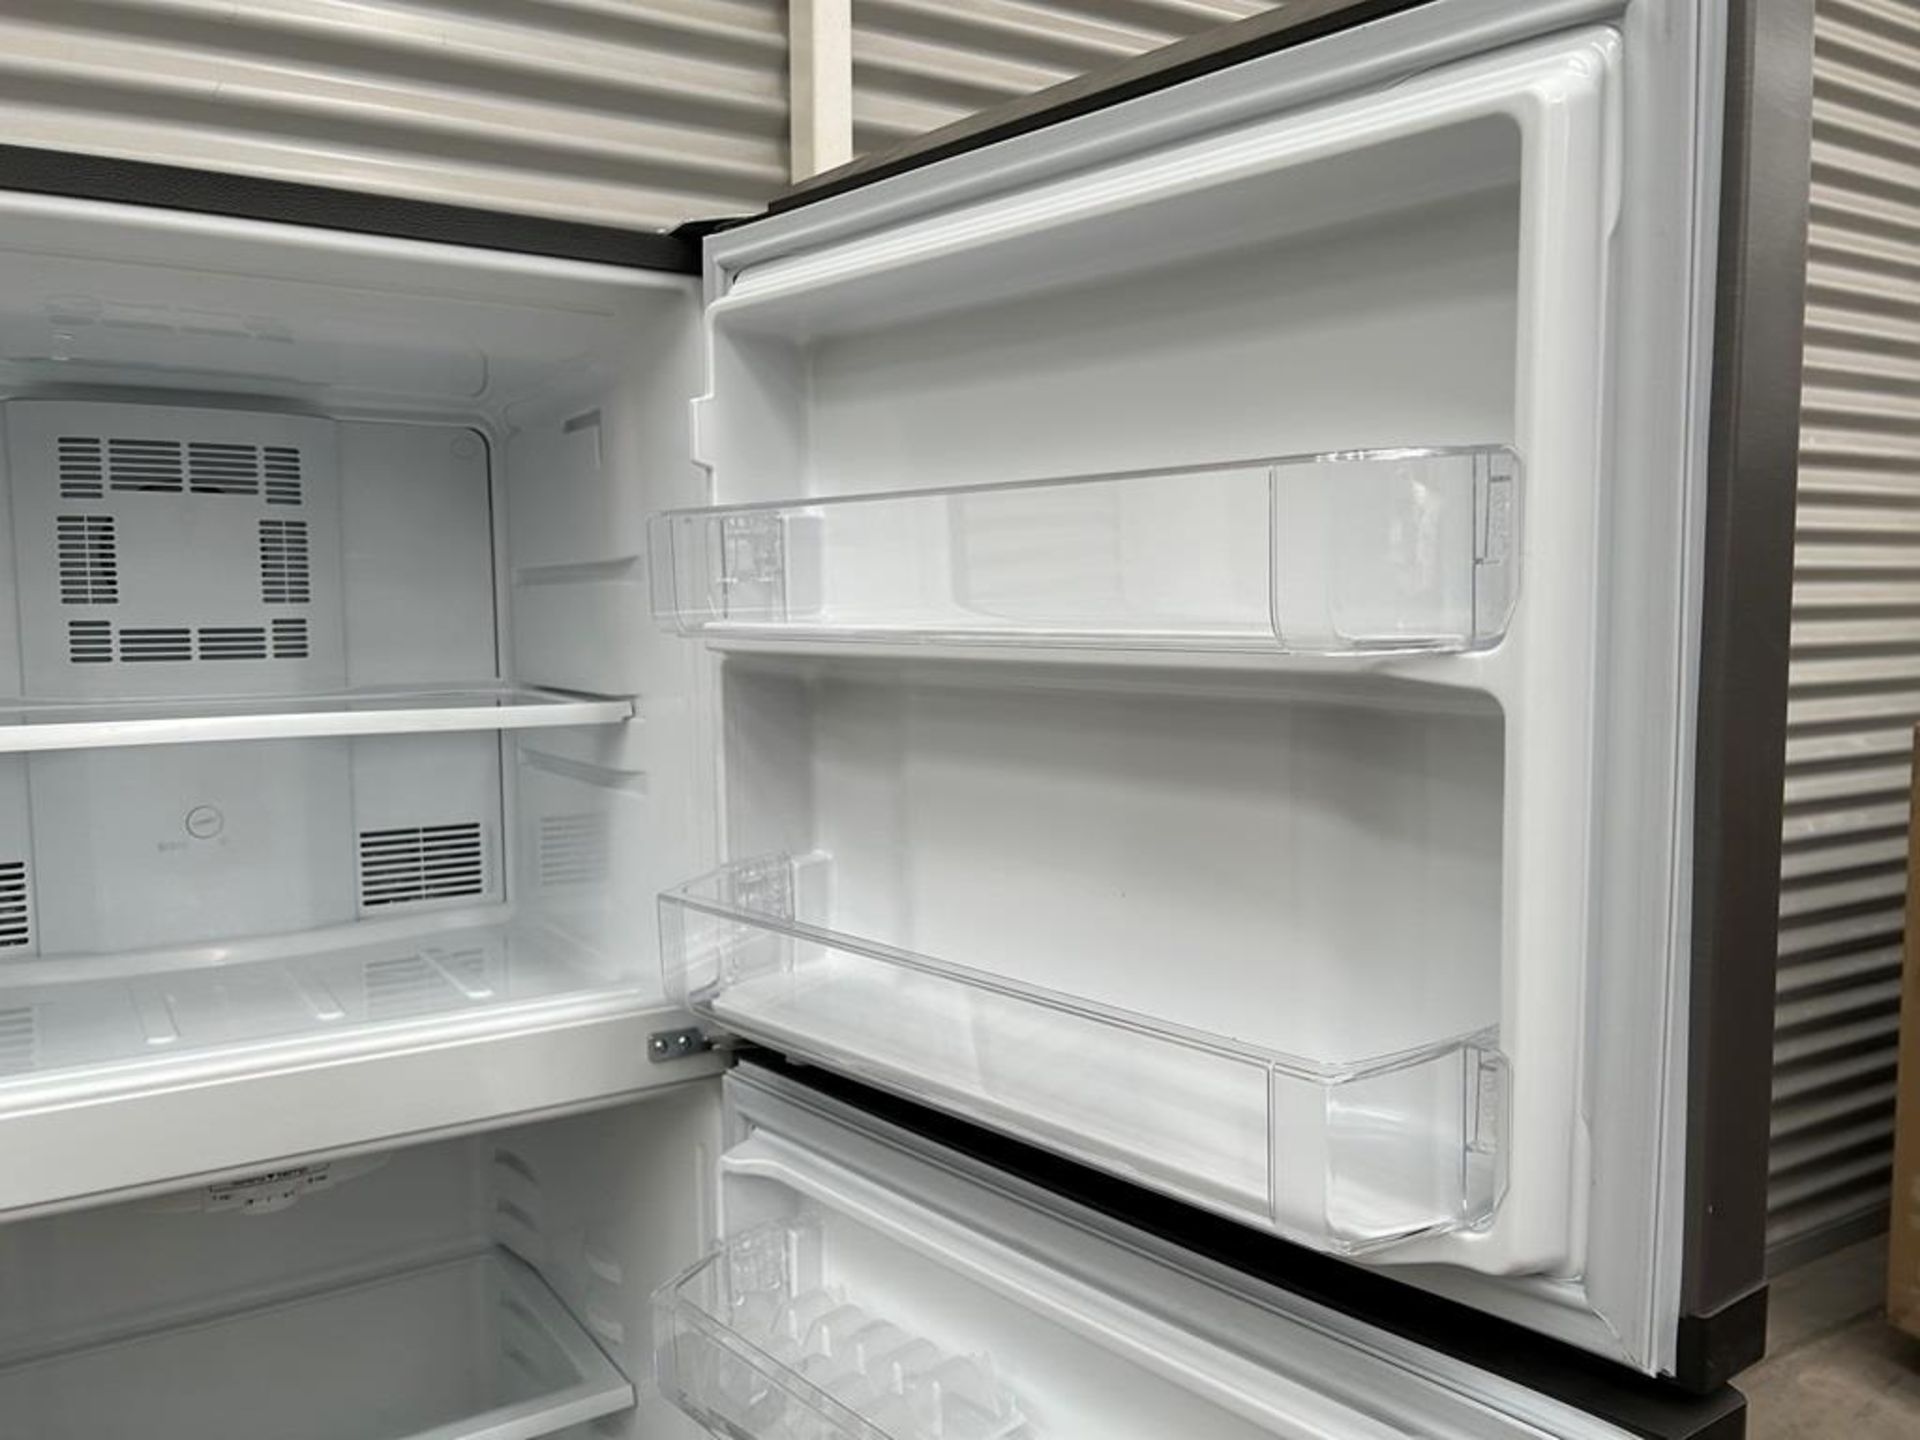 Lote de 2 refrigeradores contiene: 1 Refrigerador Marca MABE, Modelo RME360PVMRM0, Serie 01177, Col - Image 8 of 18